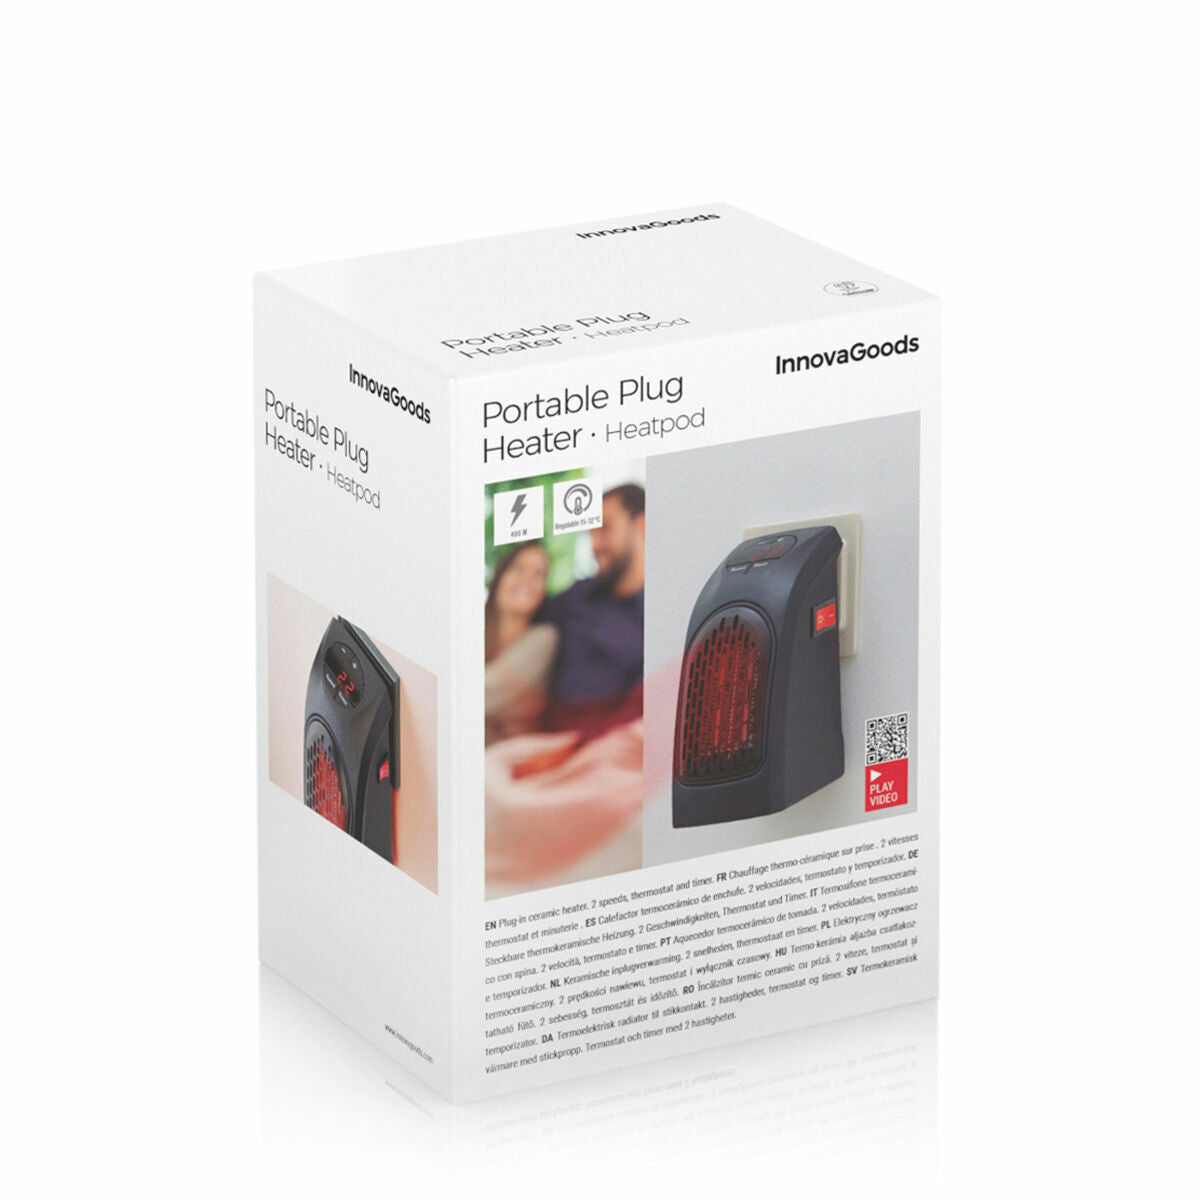 Kaufe Tragbare Mini-Heizung für die Steckdose Heatpod InnovaGoods 400 W bei AWK Flagship um € 33.00